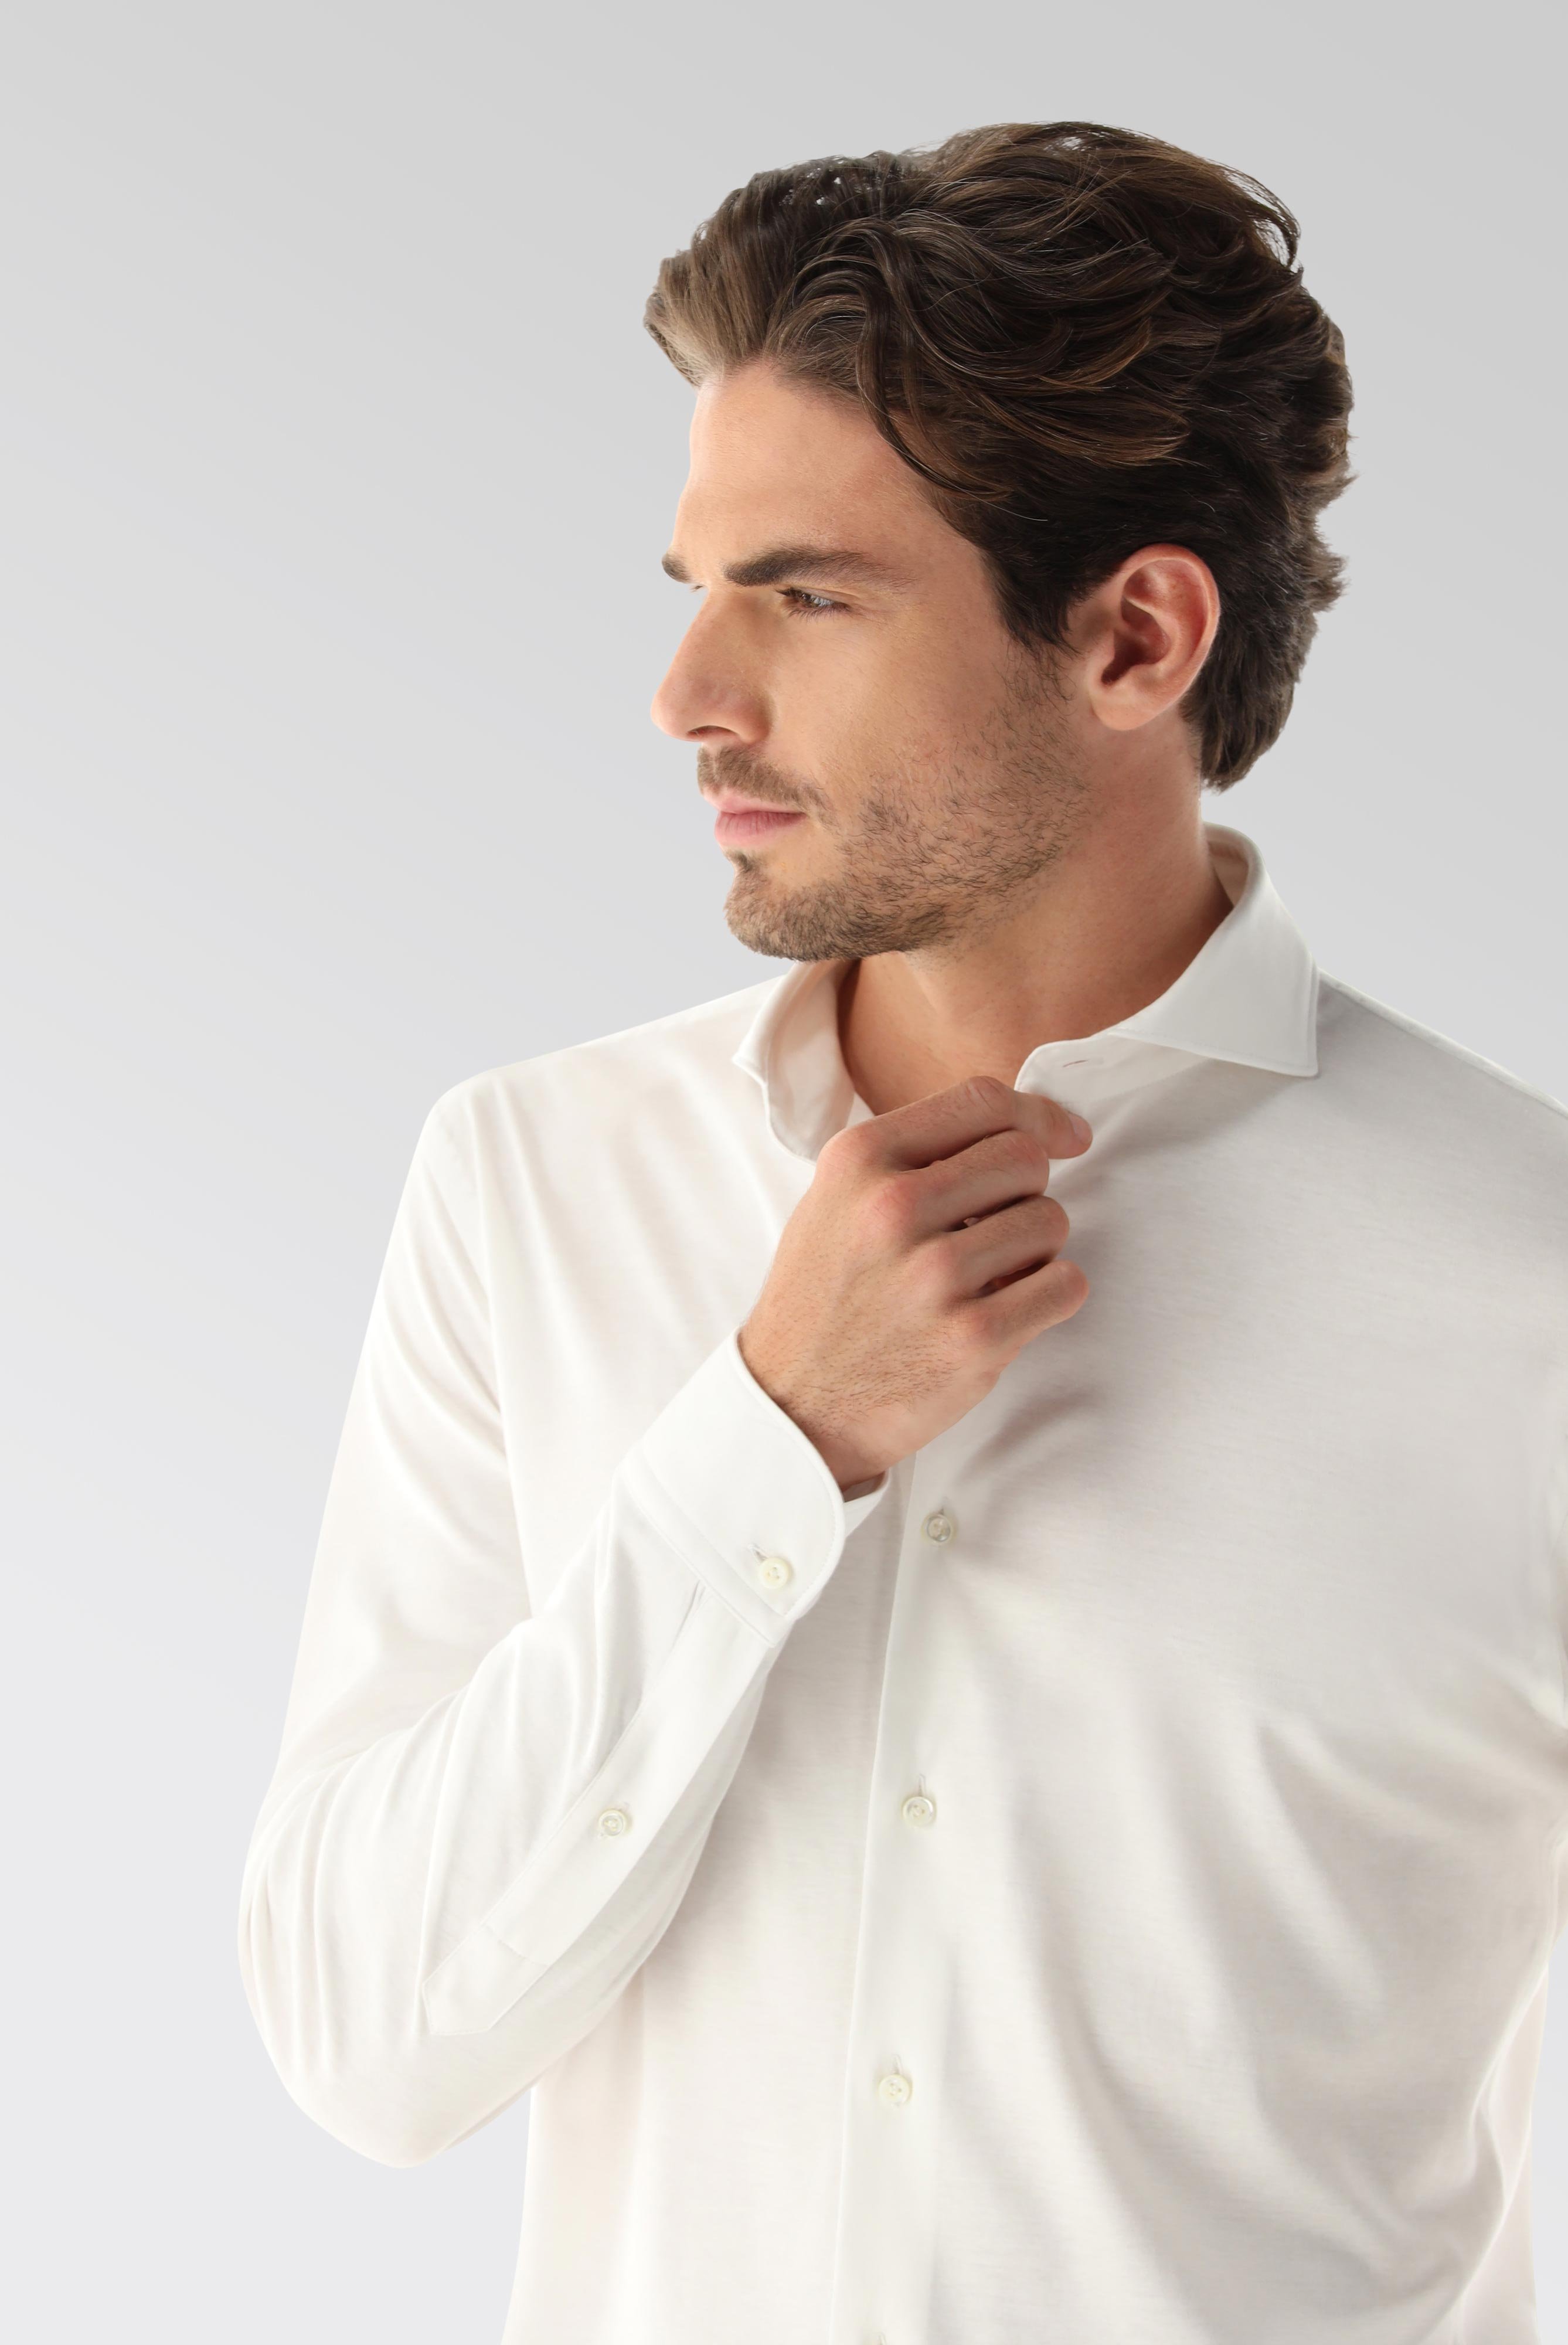 Bügelleichte Hemden+Jersey Hemd mit glänzender Optik Tailor Fit+20.1683.UC.180031.000.XXL